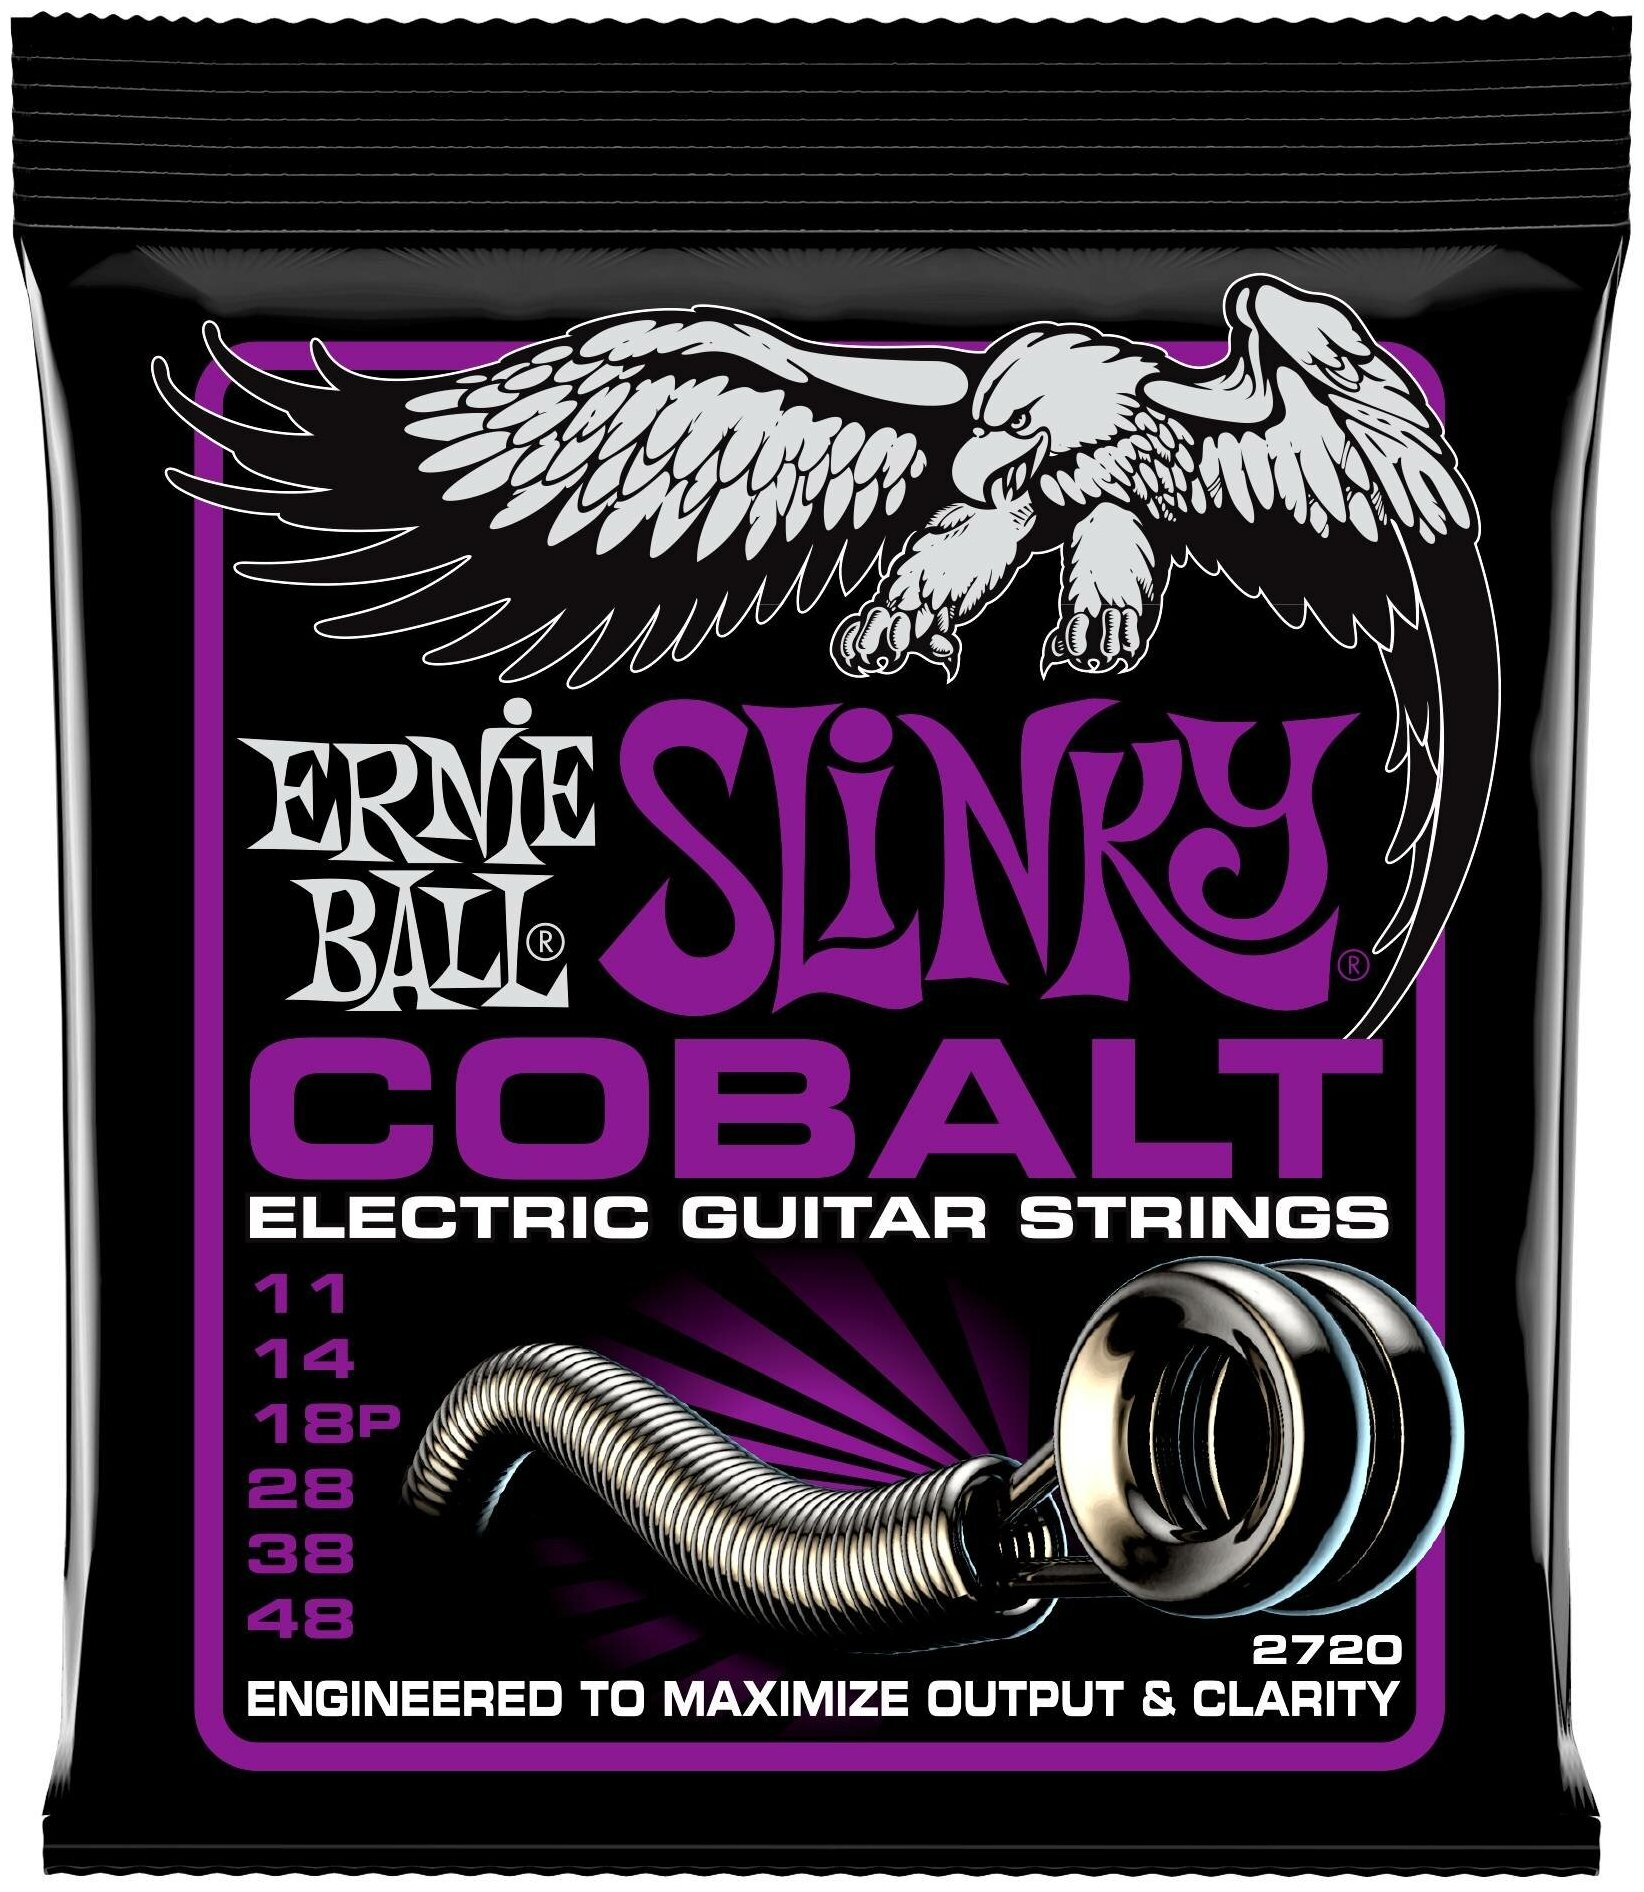 ERNIE BALL 2720 - струны для эл. гитары Cobalt Power Slinky (11-14-18p-28-38-48)